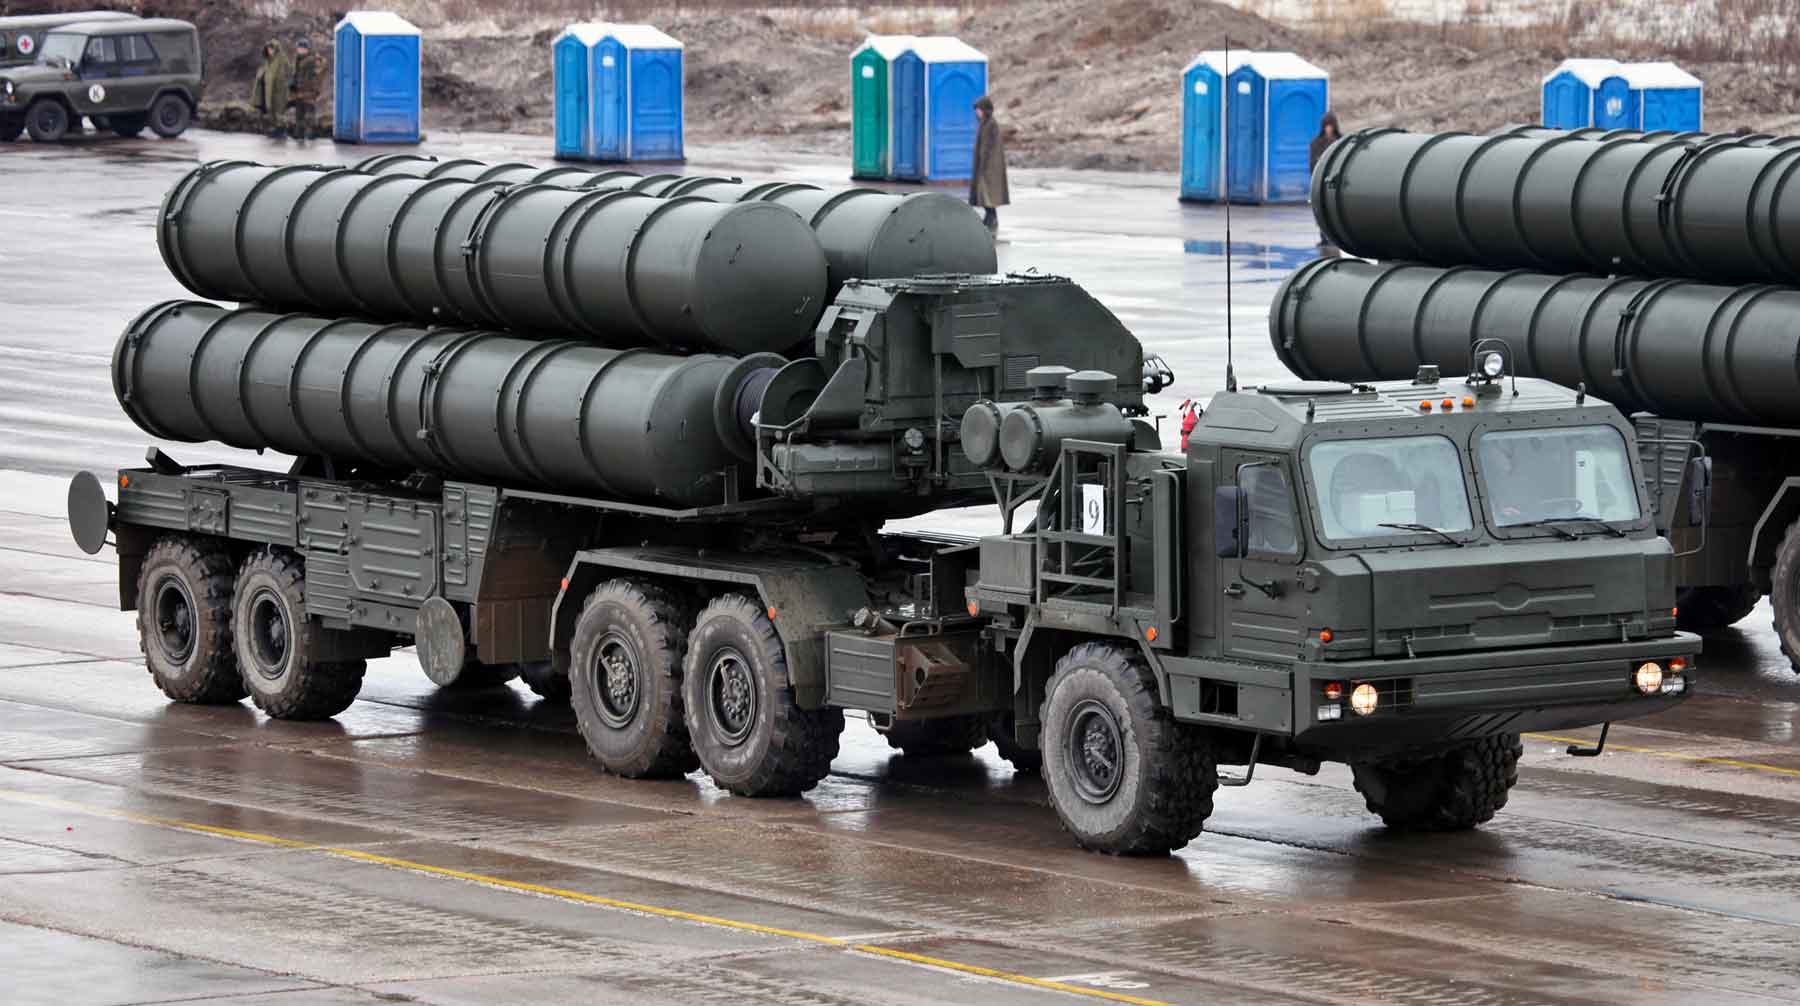 Это последнее предложение Анкаре от Вашингтона, заявили в Госдепе Зенитно-ракетный комплекс С-400